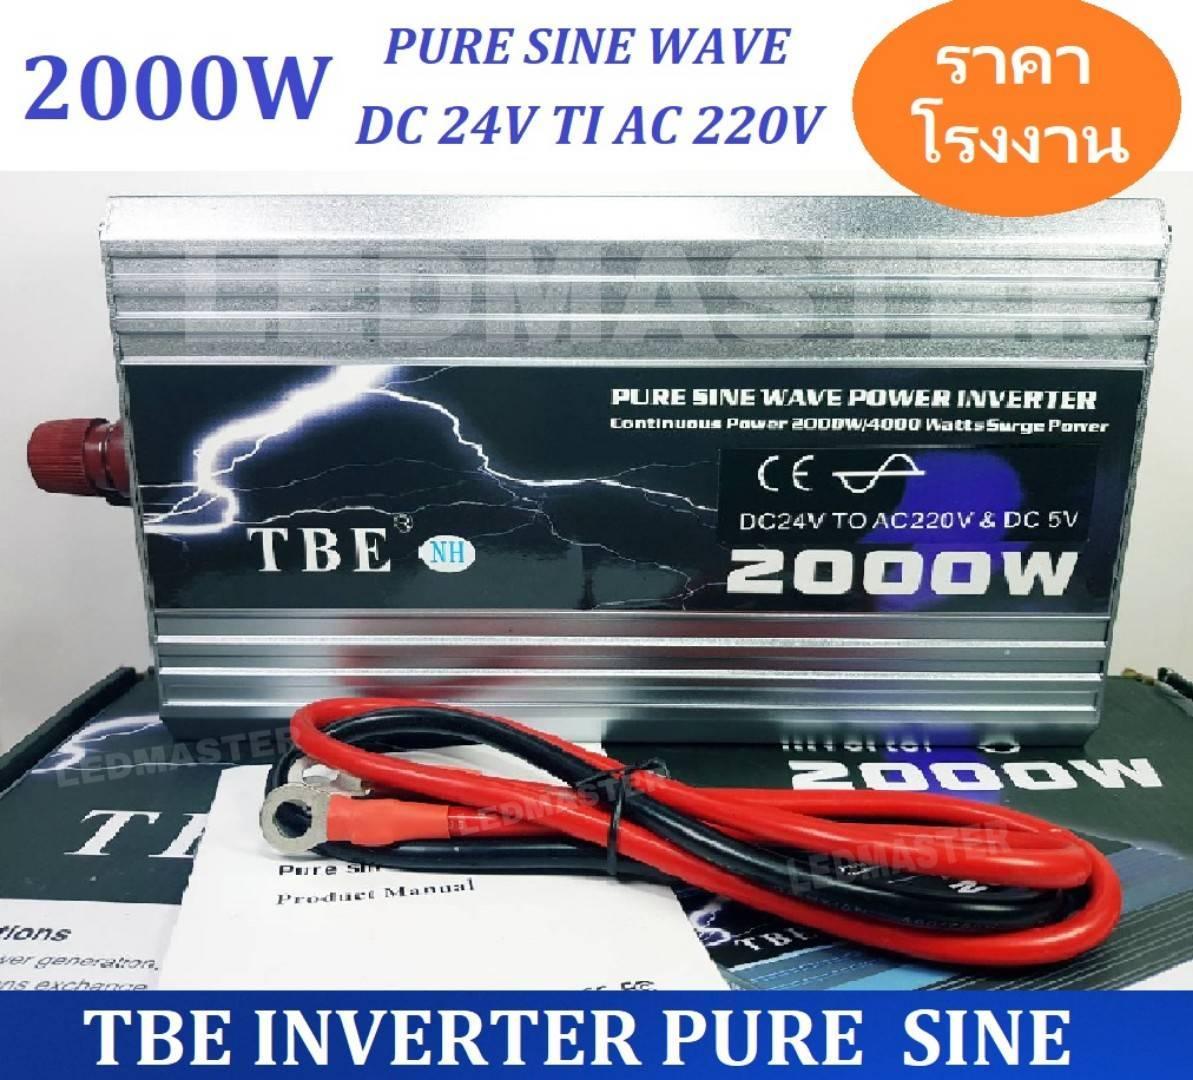 [ เเท้ 100% ] TBE pure sine wave power inverter 24V 2000W เครื่องแปลงไฟรถเป็นไฟบ้าน คลื่นกระเเสไฟนิ่ง (DC 24 V TO AC 220V) อินเวอร์เตอร์หรือหม้อแปลงไฟ ใช้สำหรับเเปลงไฟแบตเป็นไฟบ้าน คอมพิวเตอร์ เครื่องใช้ไฟฟ้าในบ้าน ชุดแห่เครื่องเสียง จำนวน 1 เครื่อง